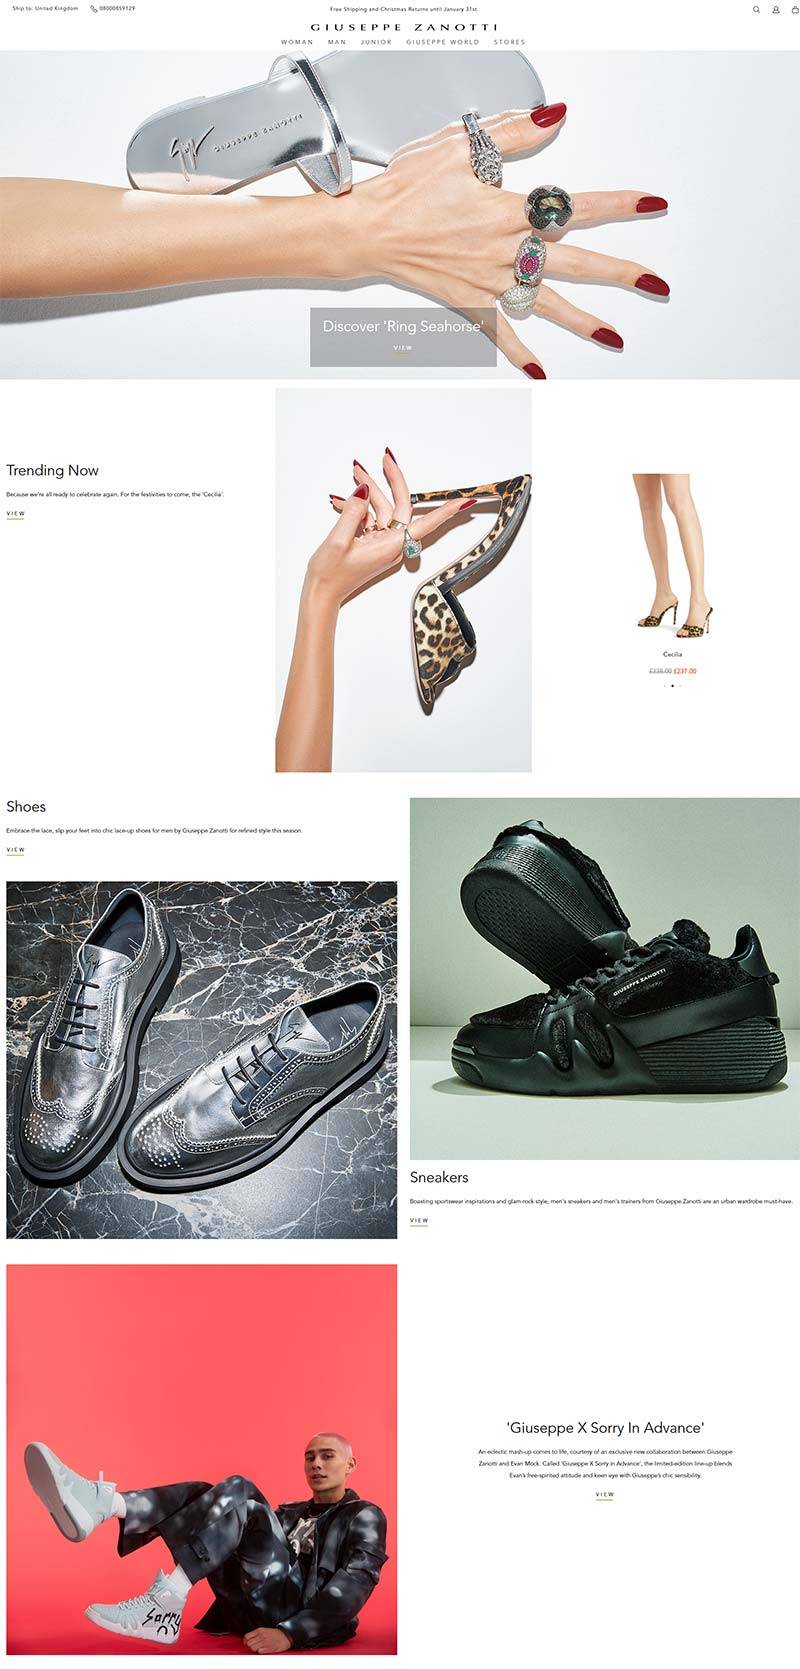 Giuseppe Zanotti UK 意大利高端女鞋品牌英国官网